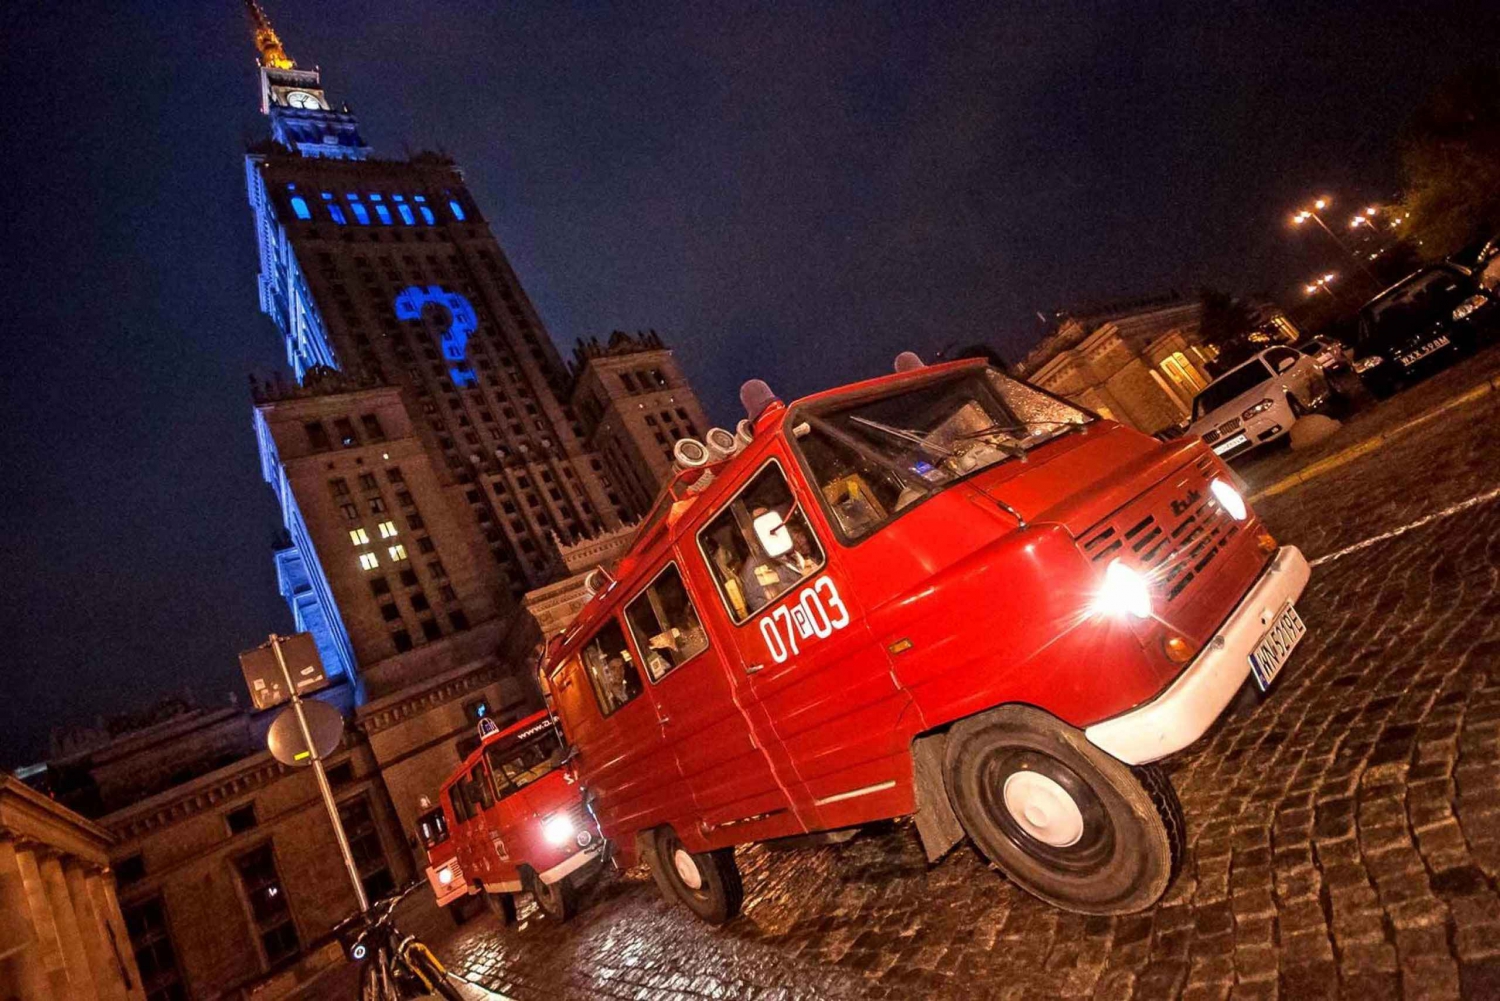 Warszawa: Wieczorna wycieczka po historii i pubach minibusem retro